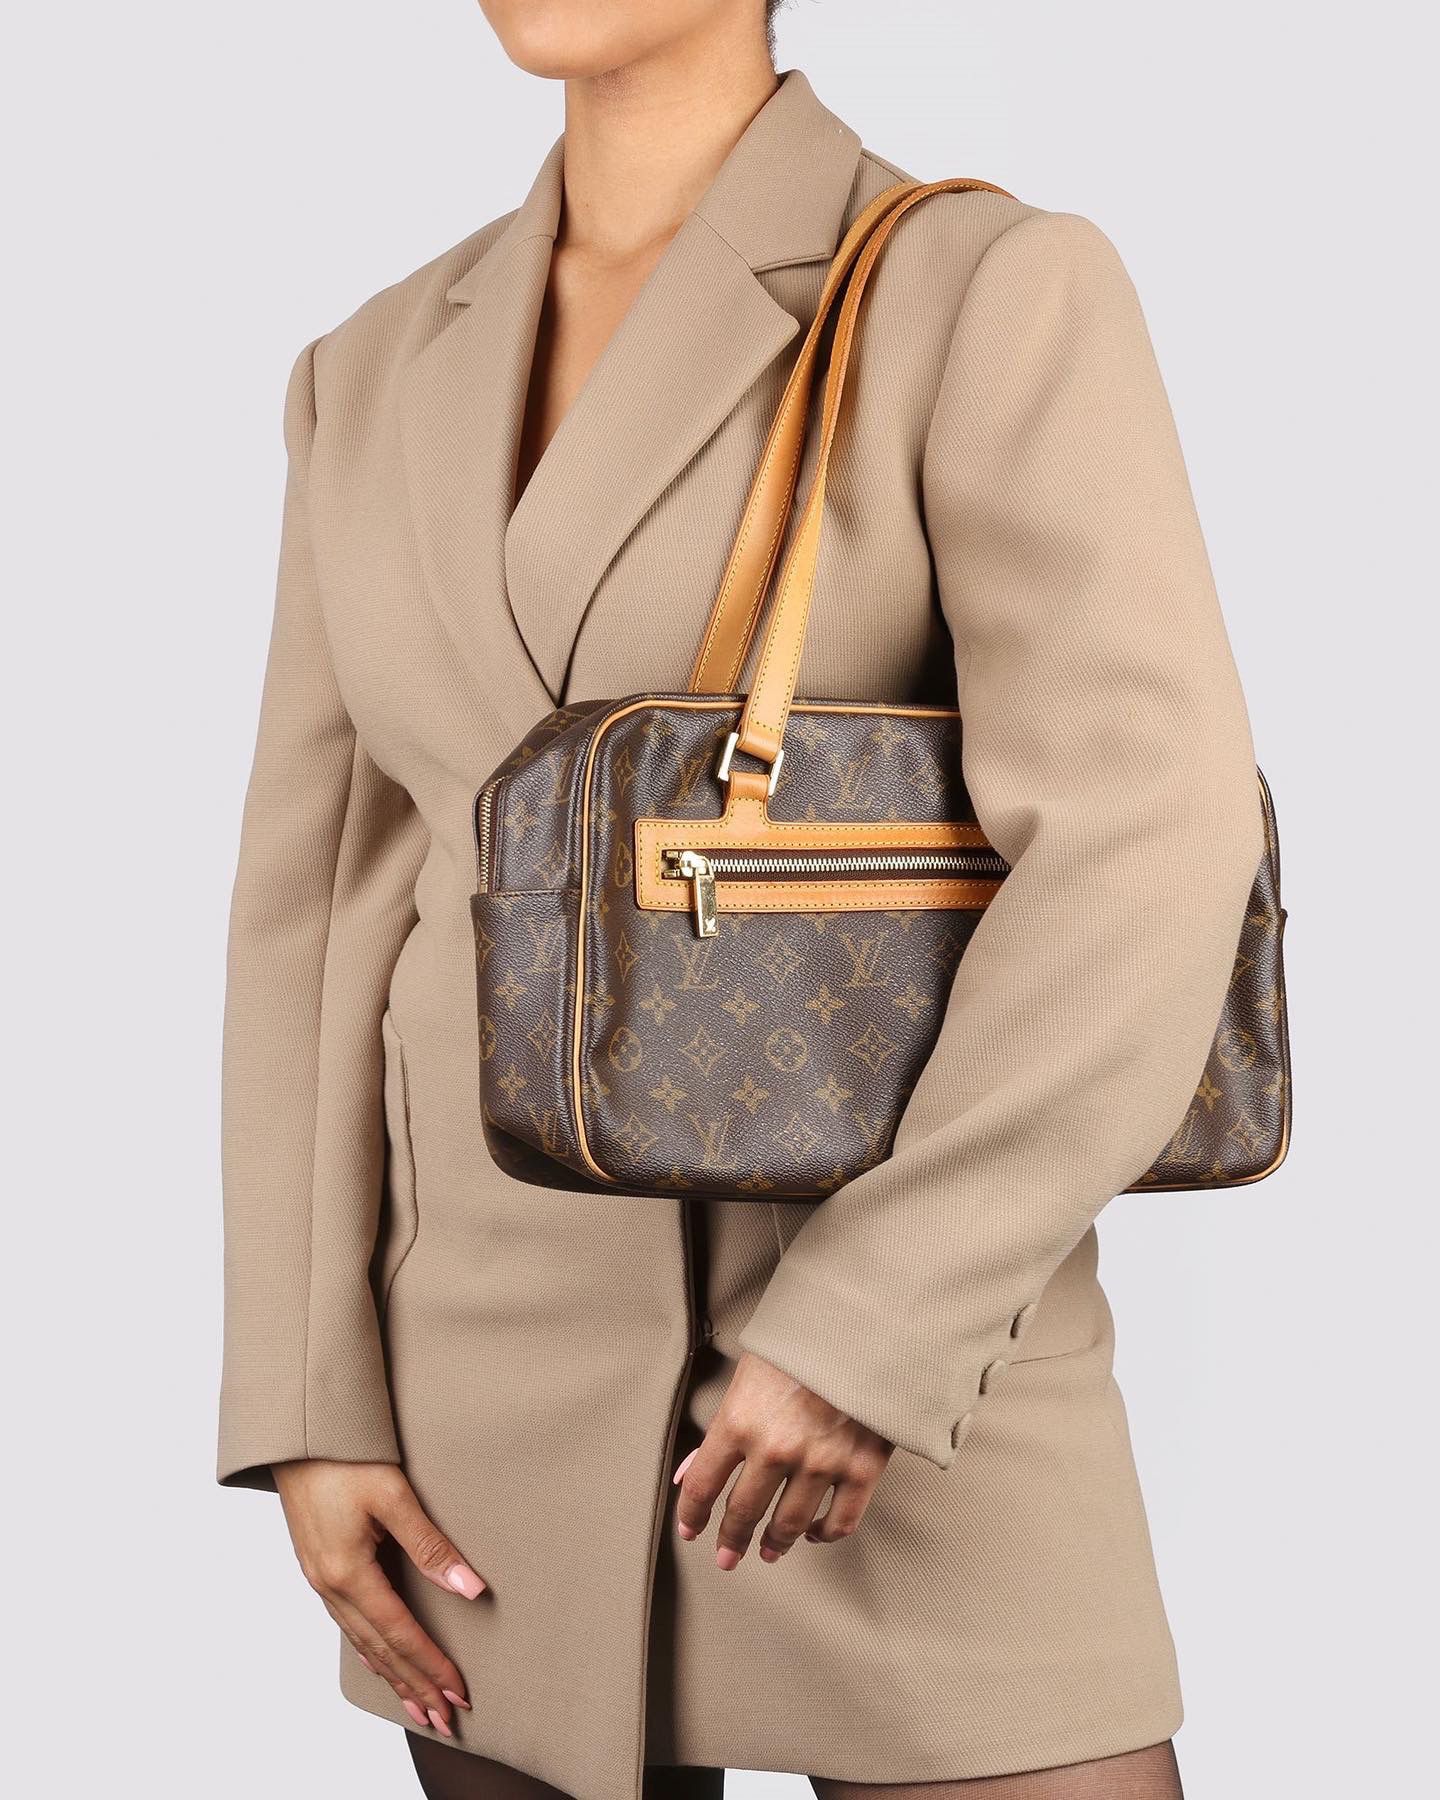 Góc chia sẻ] Túi xách Louis Vuitton chính hãng giá bao nhiêu